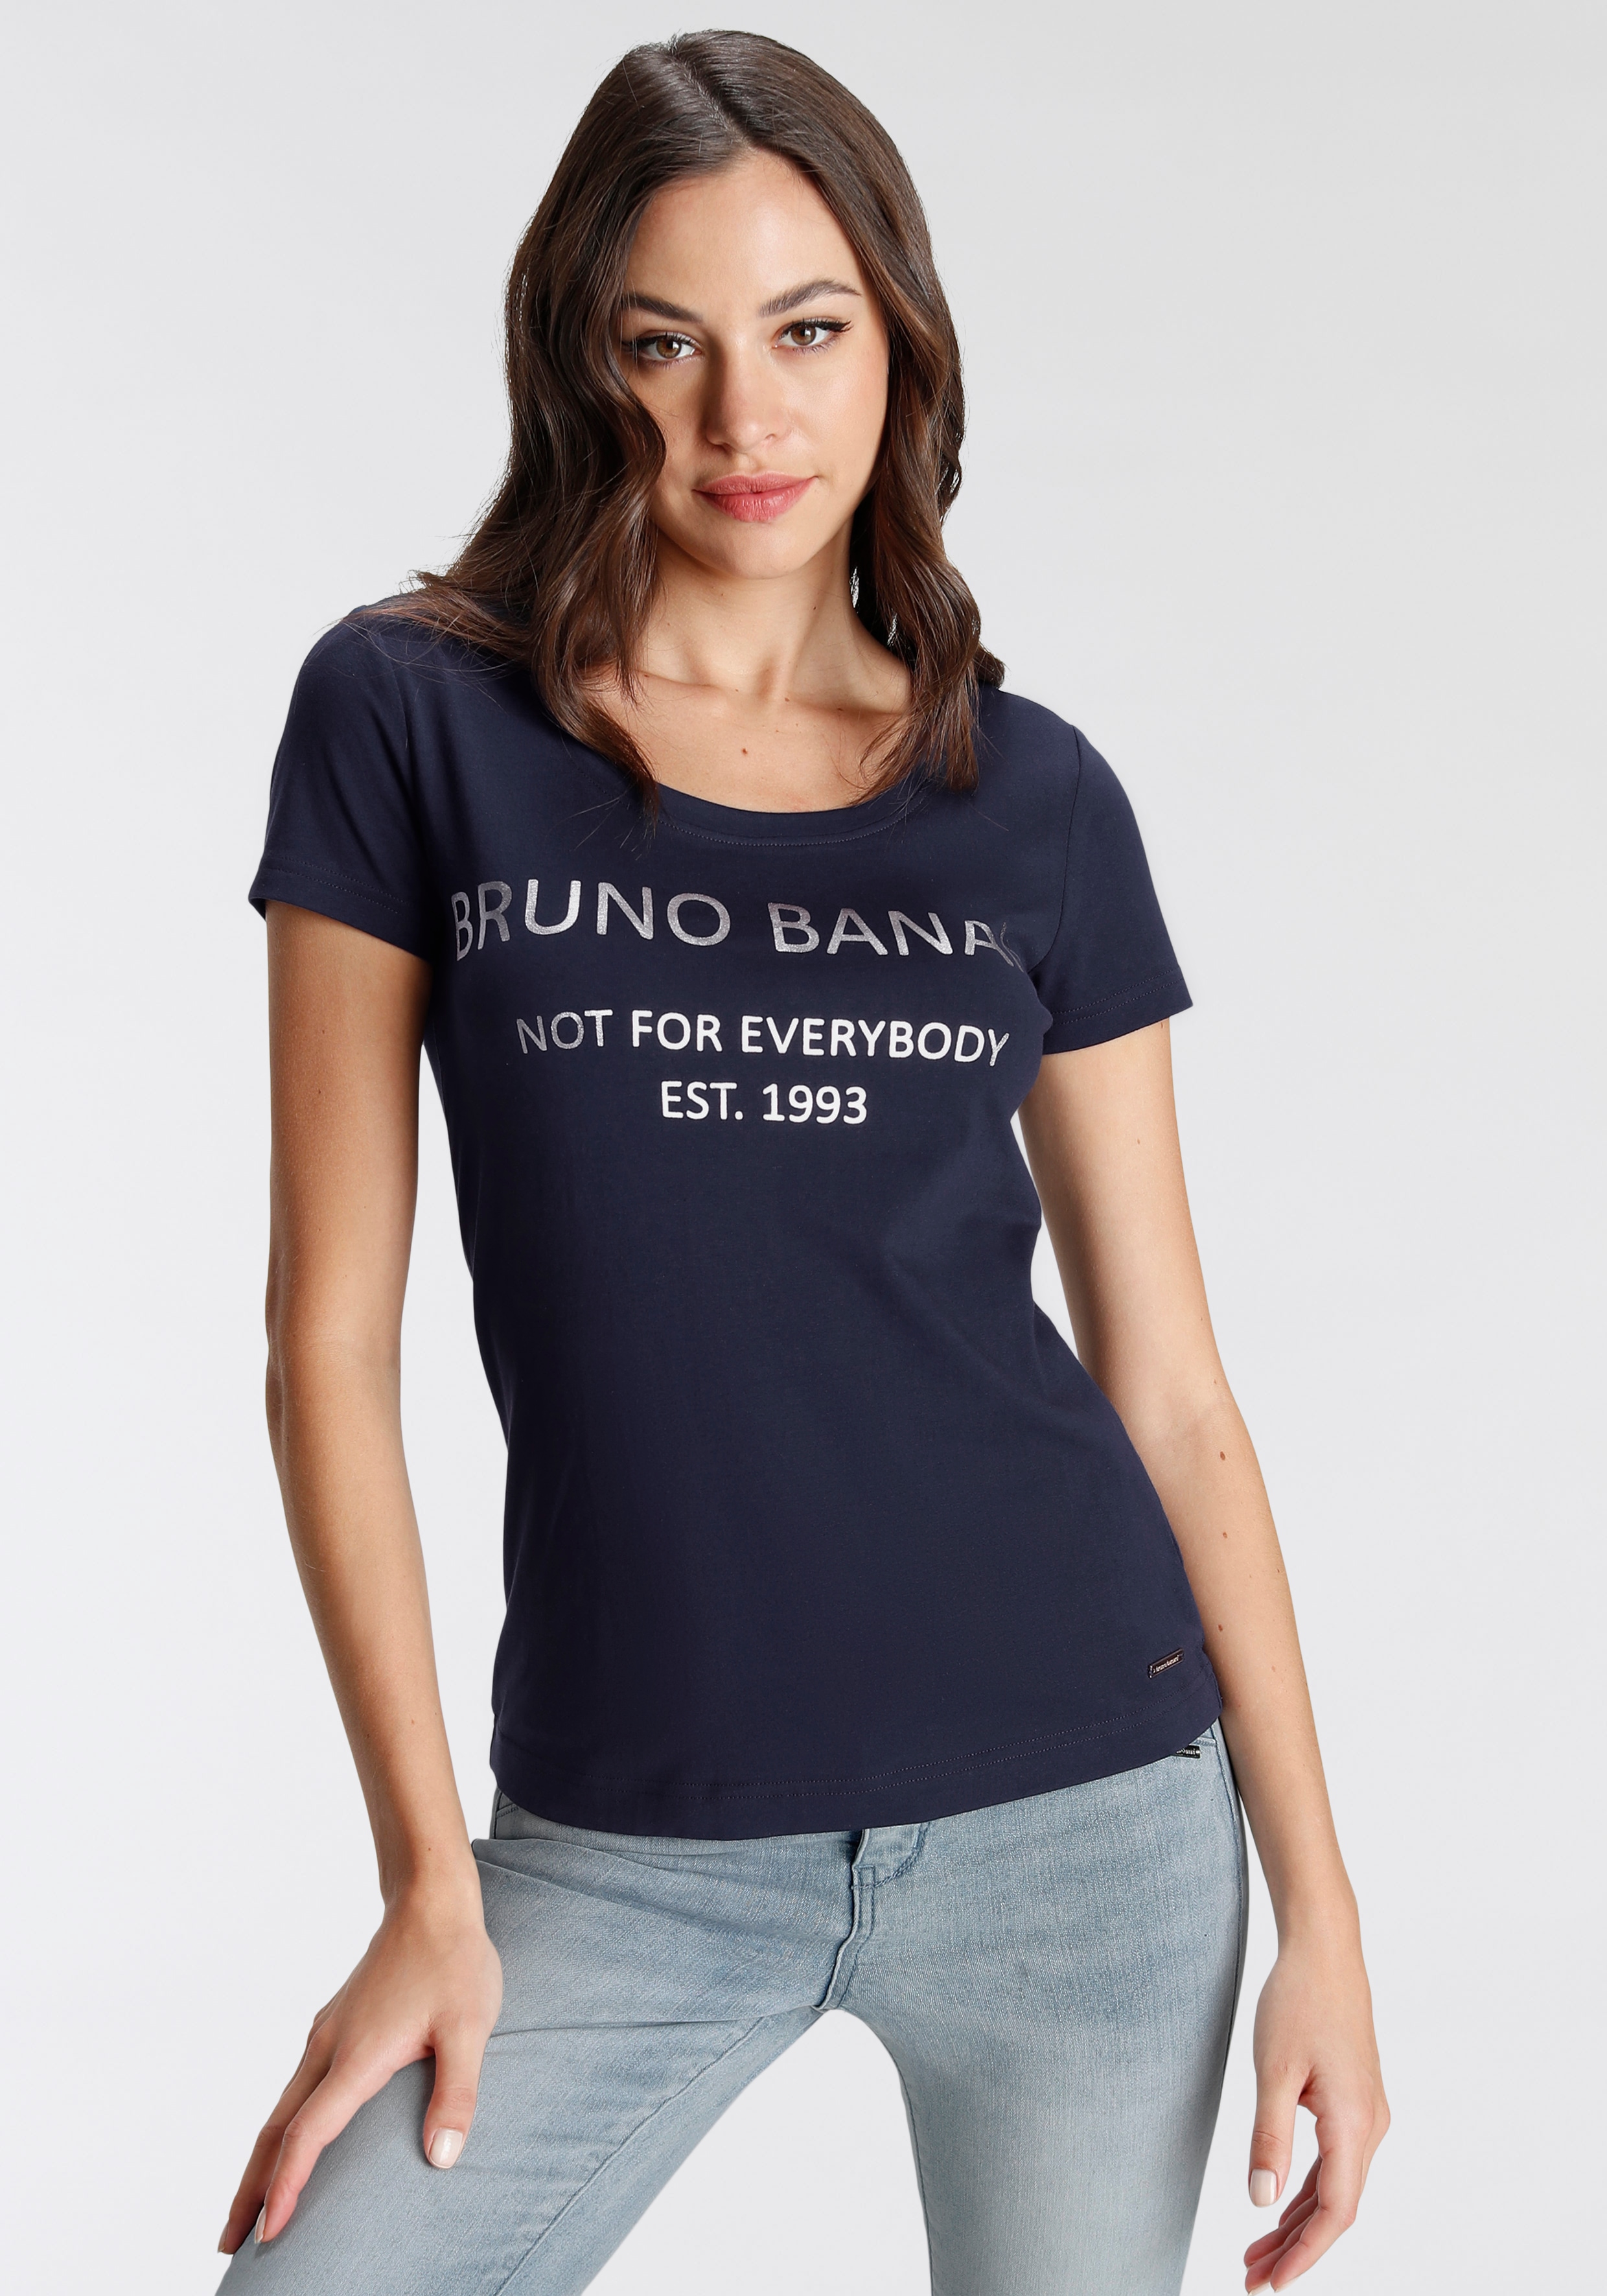 Bruno Banani T-Shirt Damen kaufen | Günstig im Preisvergleich